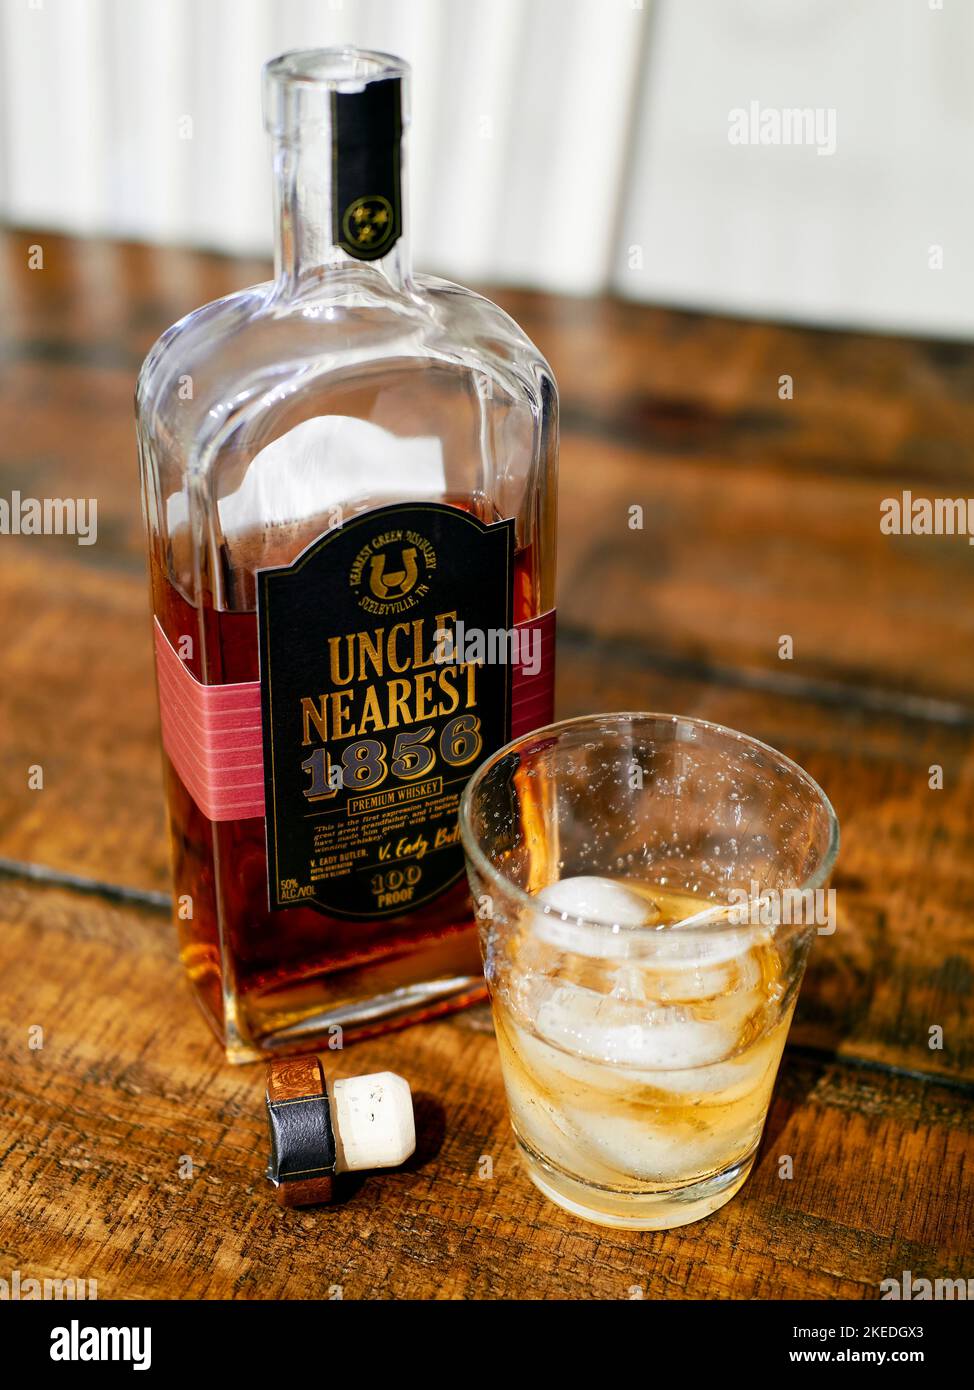 Onkel, die nächste Tennessee Bourbon Whiskyflasche auf dem obersten Regal, neben einem Glas Bourbon, auf Eis auf einem Tisch. Stockfoto